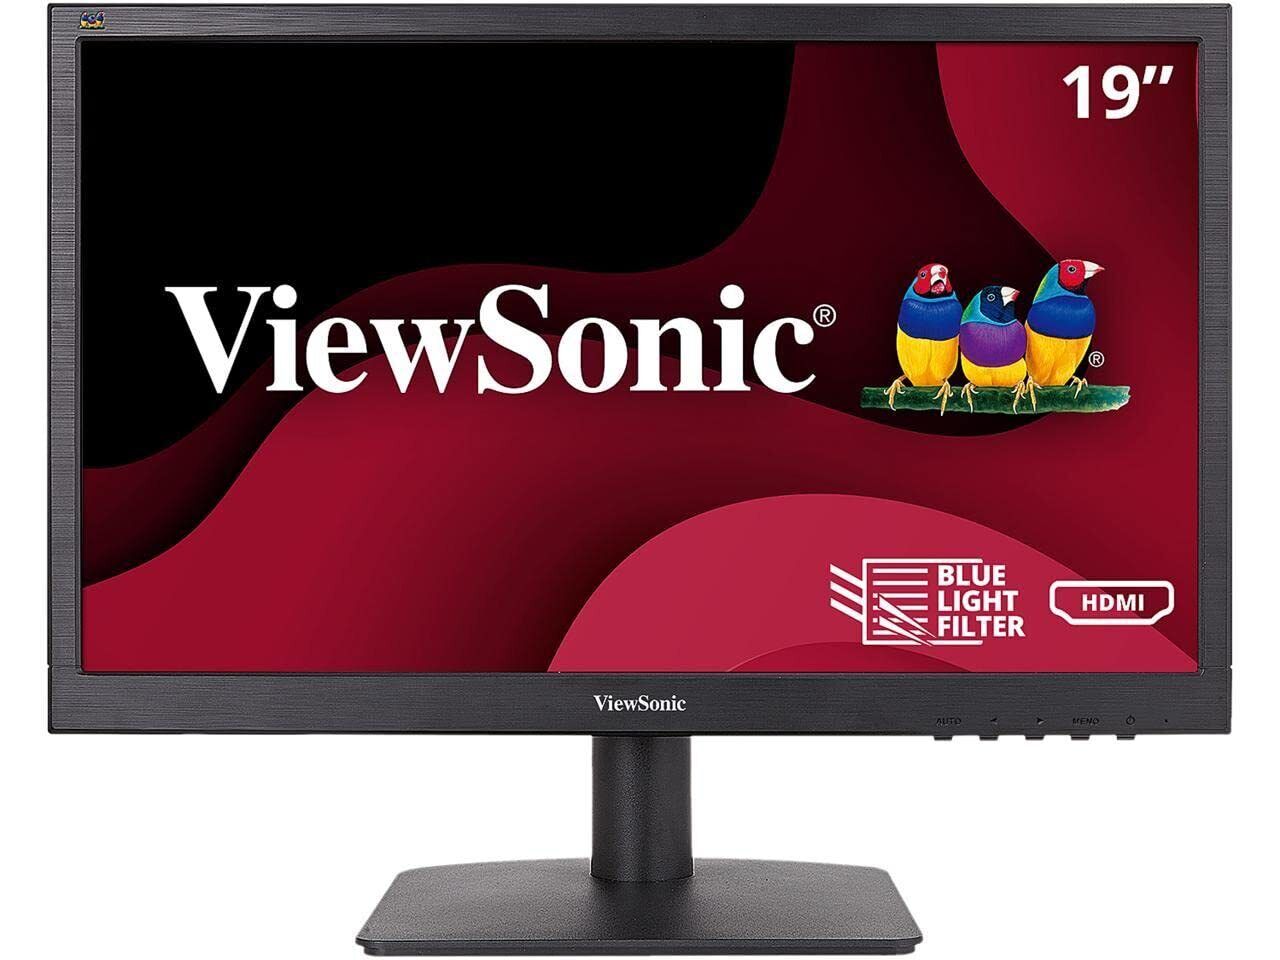 ViewSonic monitor VA1903H 19-Inch WXGA 1366x768p 16:9 Widescreen Monitor